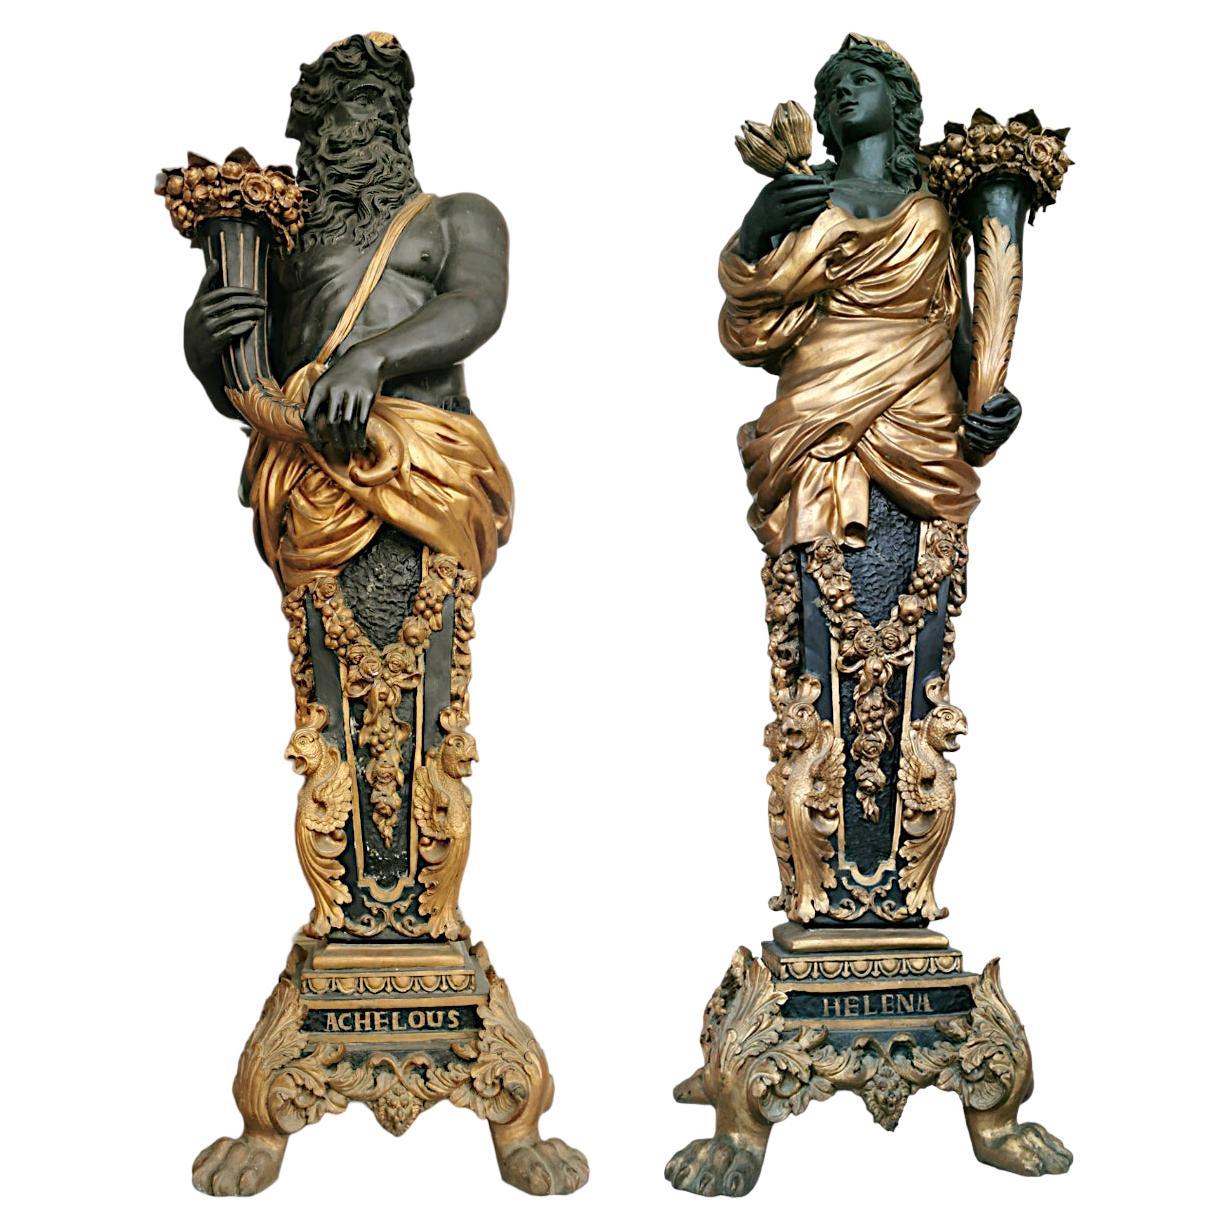 Importante paire de sculptures représentant Achello et Helena (personnages mythologiques célèbres) en bronze, réalisées selon la technique de la cire perdue, datant du XIXe siècle (seconde moitié des années 1800 mais réalisées dans le style